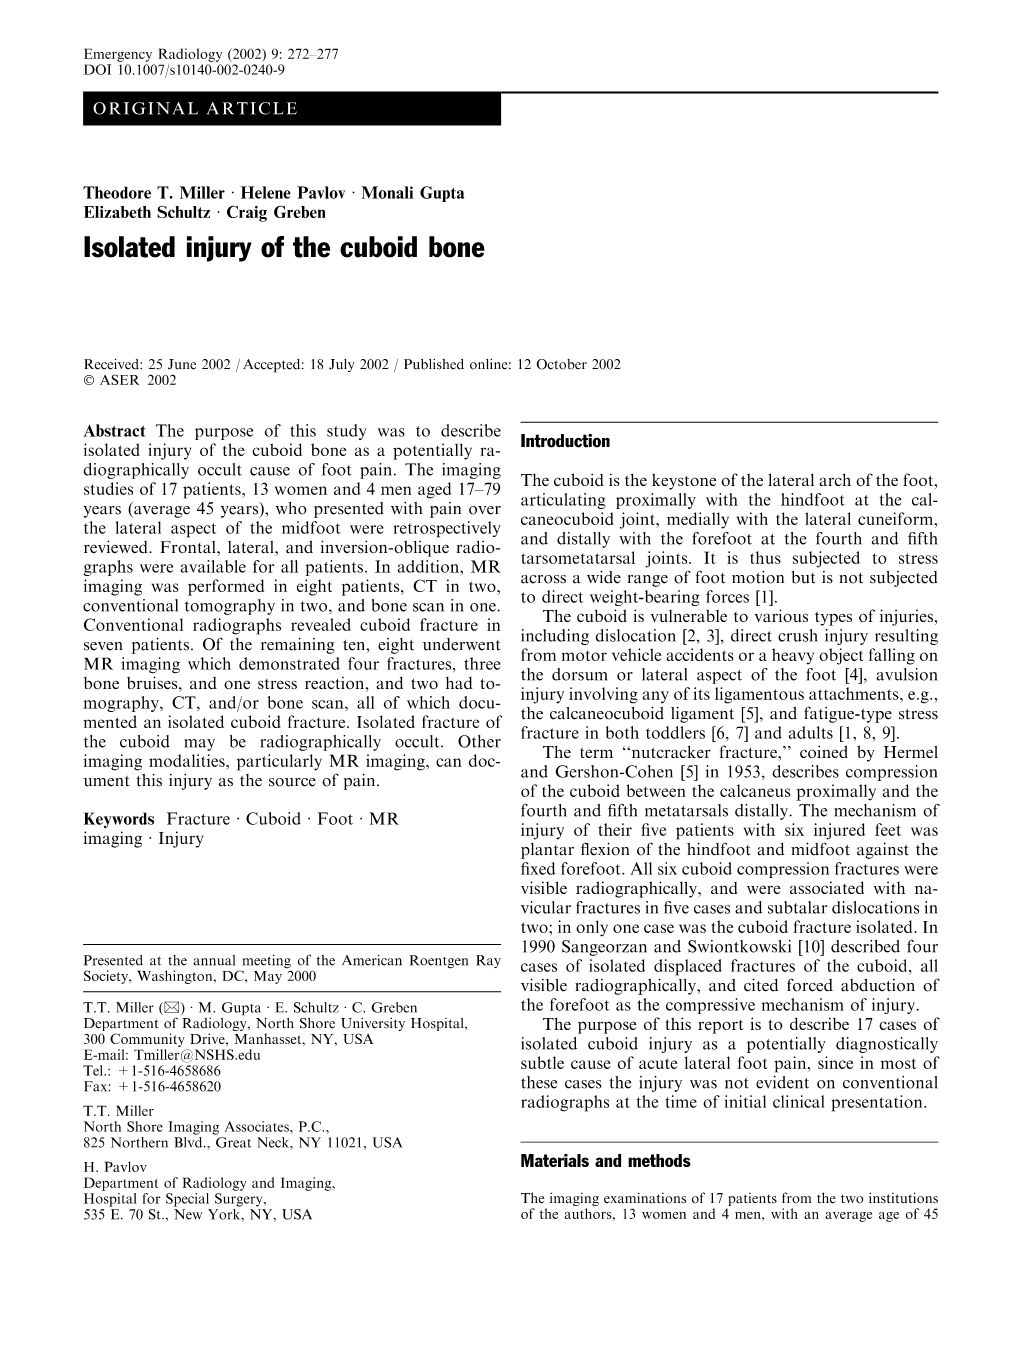 Isolated Injury of the Cuboid Bone